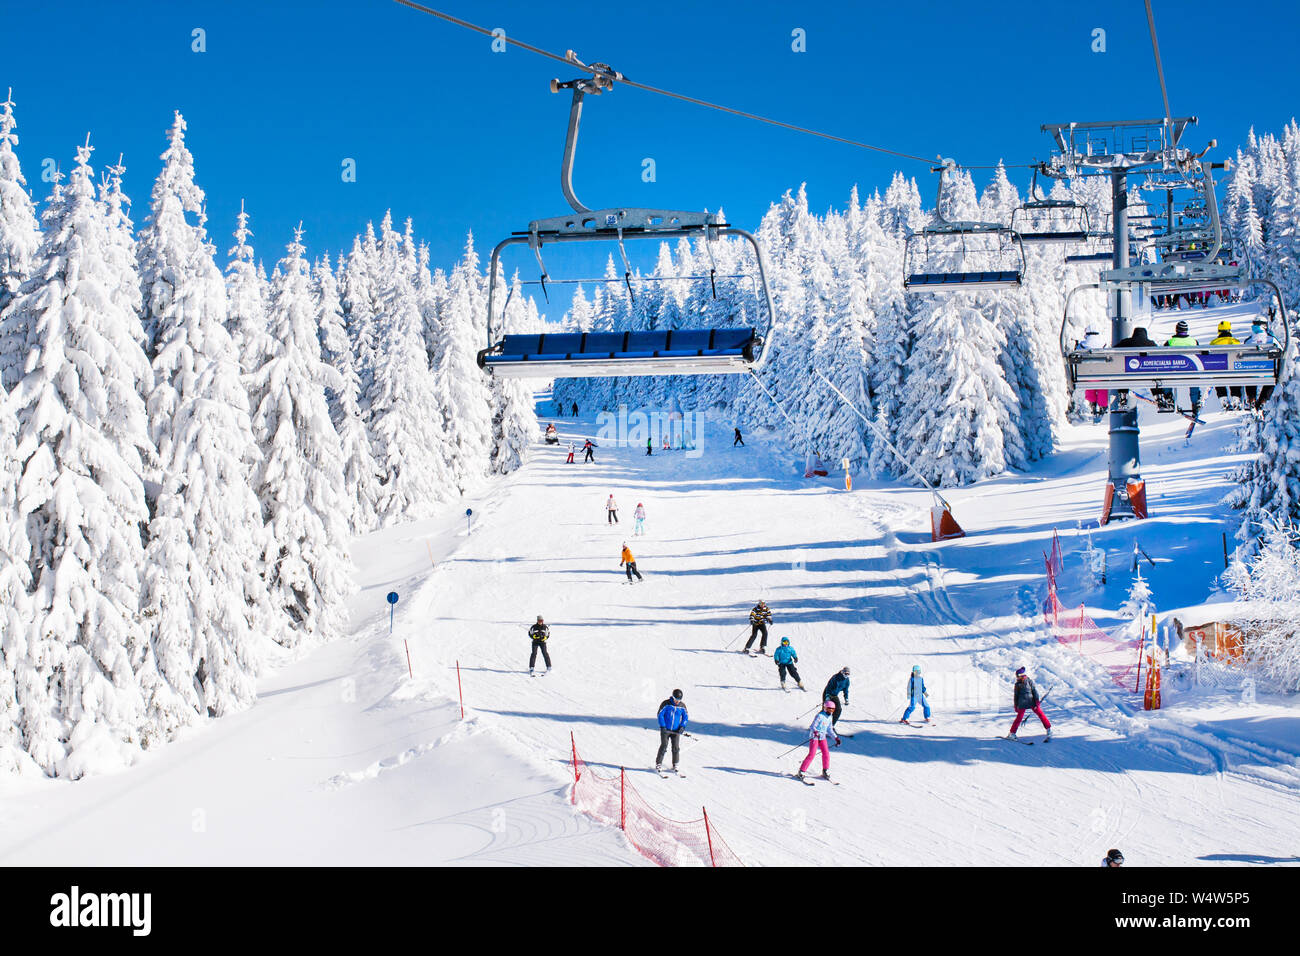 Kopaonik, Serbien - Januar 19, 2016: Skigebiet Kopaonik, Serbien, Skipiste, die Menschen auf den Skilift, die Skifahrer auf der Piste unter weißen Schnee Pinien f Stockfoto